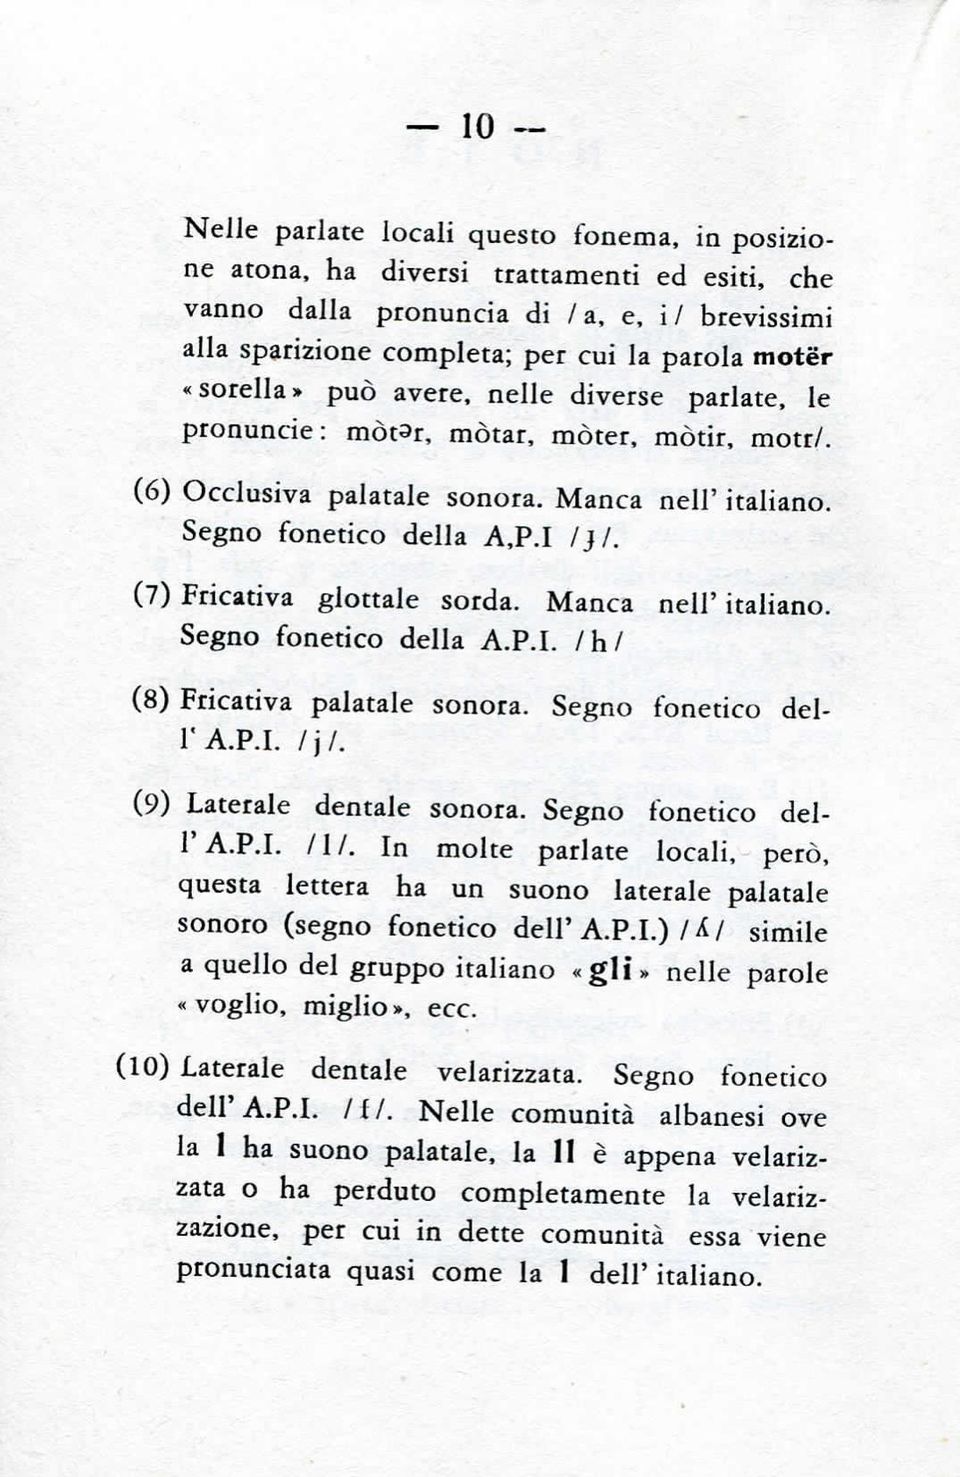 (7) Fricativa glottale sorda. Manca nell' italiano. Segno fonetico della A.P.I. Ihl (8) Fricativa palatale sonora. Segno fonetico dell'a.p.i. /)/. (9) Laterale dentale sonora. Segno fonetico dell' A.